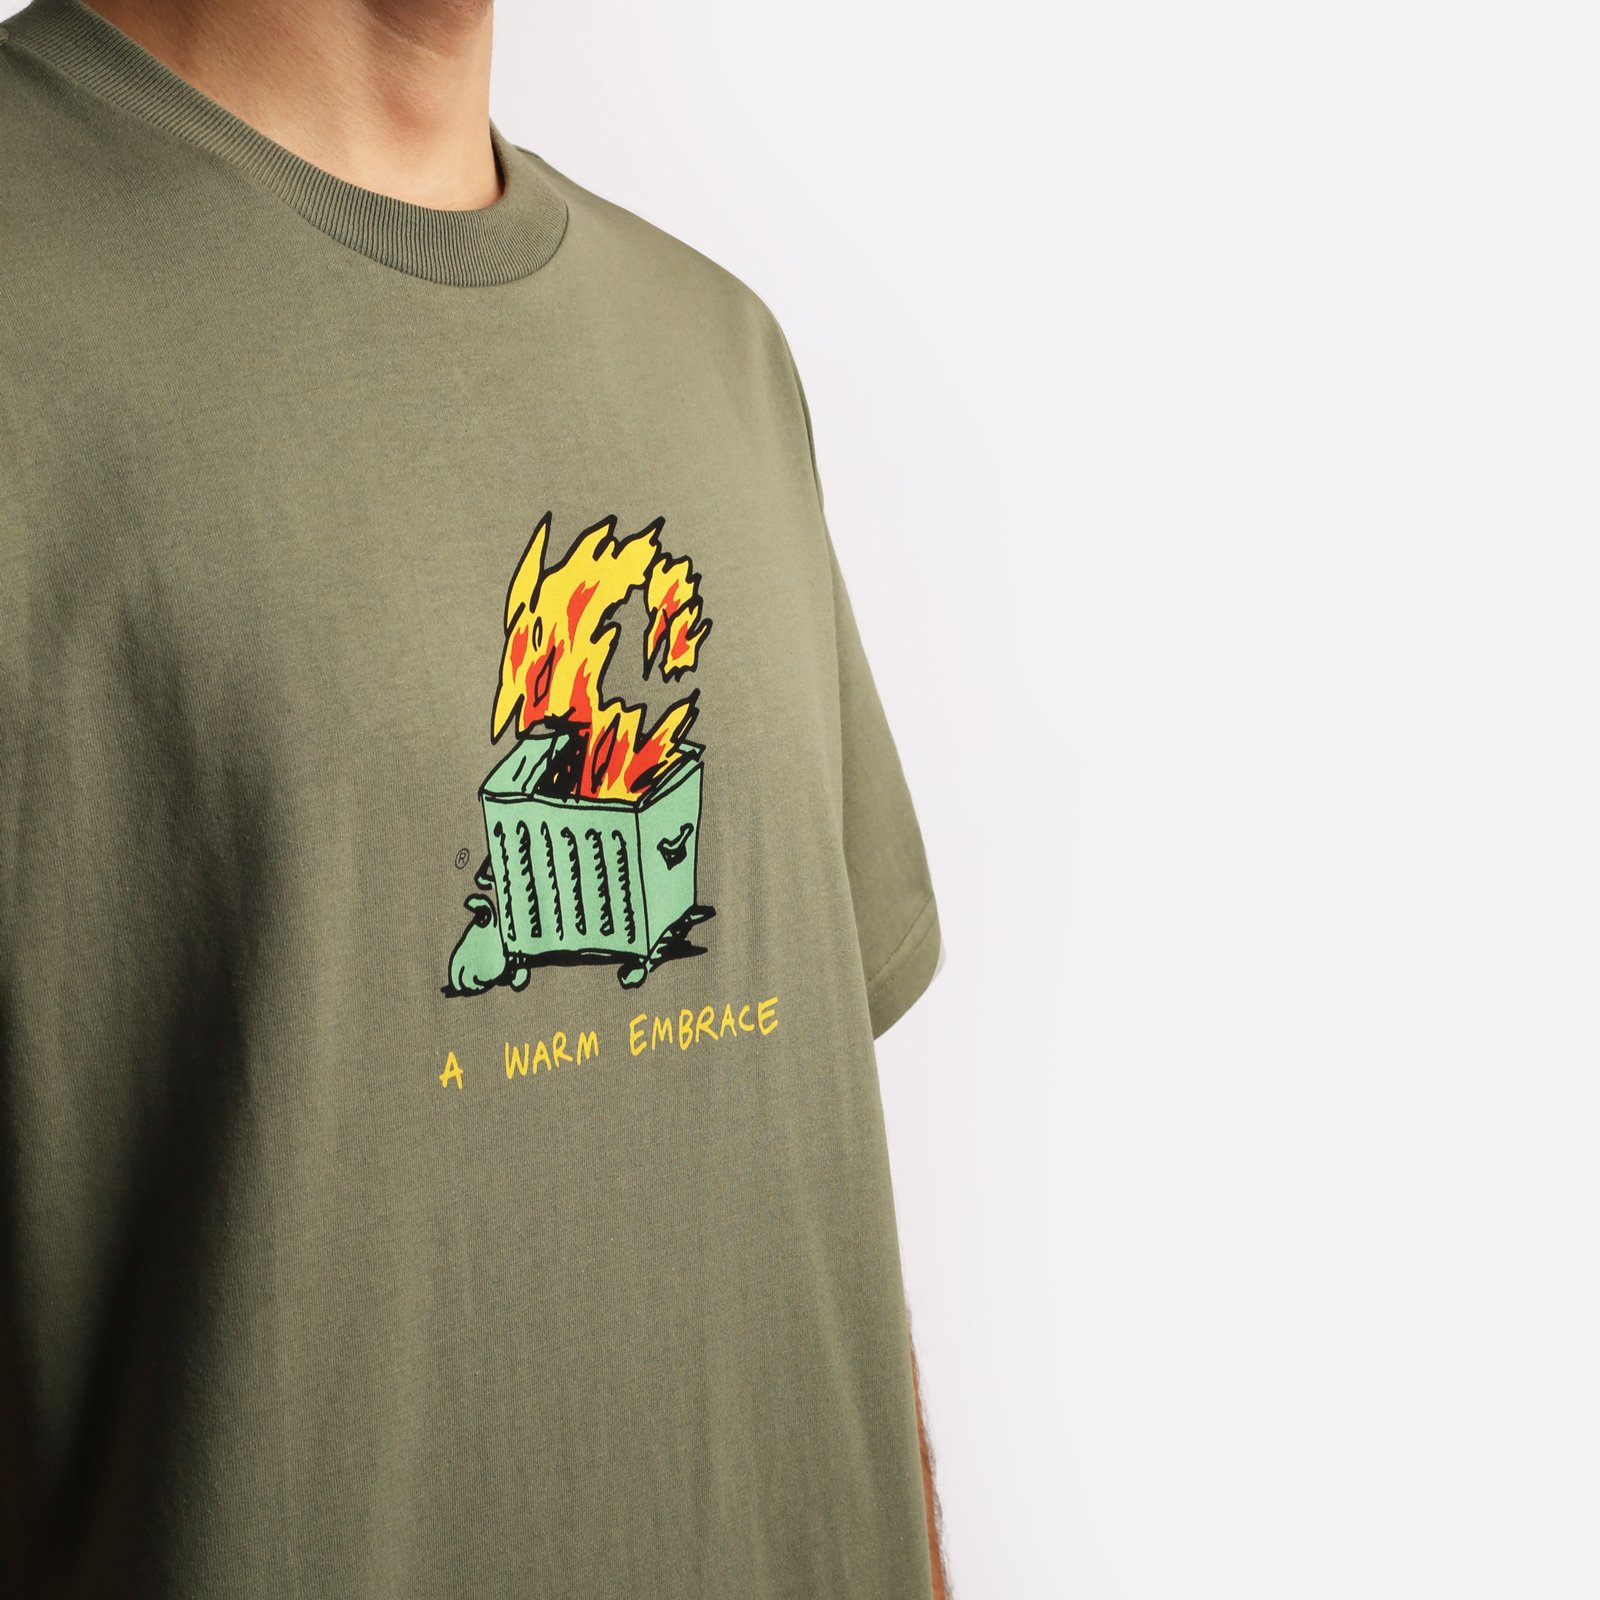 мужская футболка Carhartt WIP S/S Warm Embrace T-Shirt  (I032390-green) I032390-green - цена, описание, фото 4